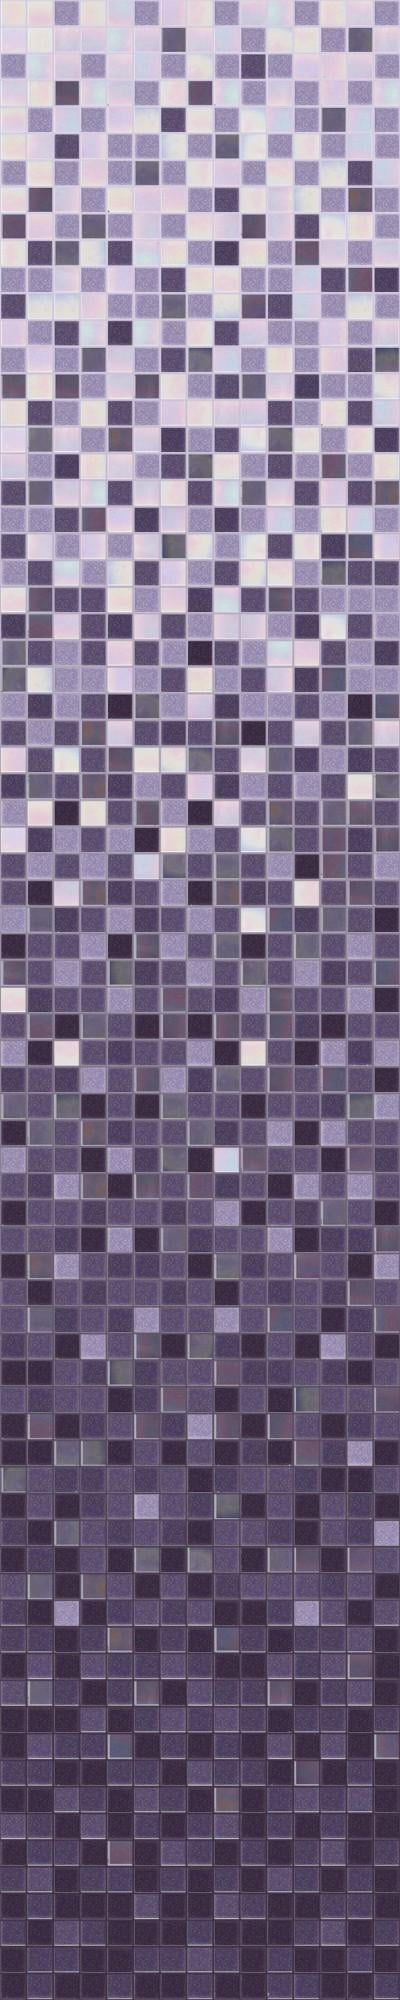 Скляна мозаїка плитка D-CORE RI-07 розтяжка 1635x327 мм